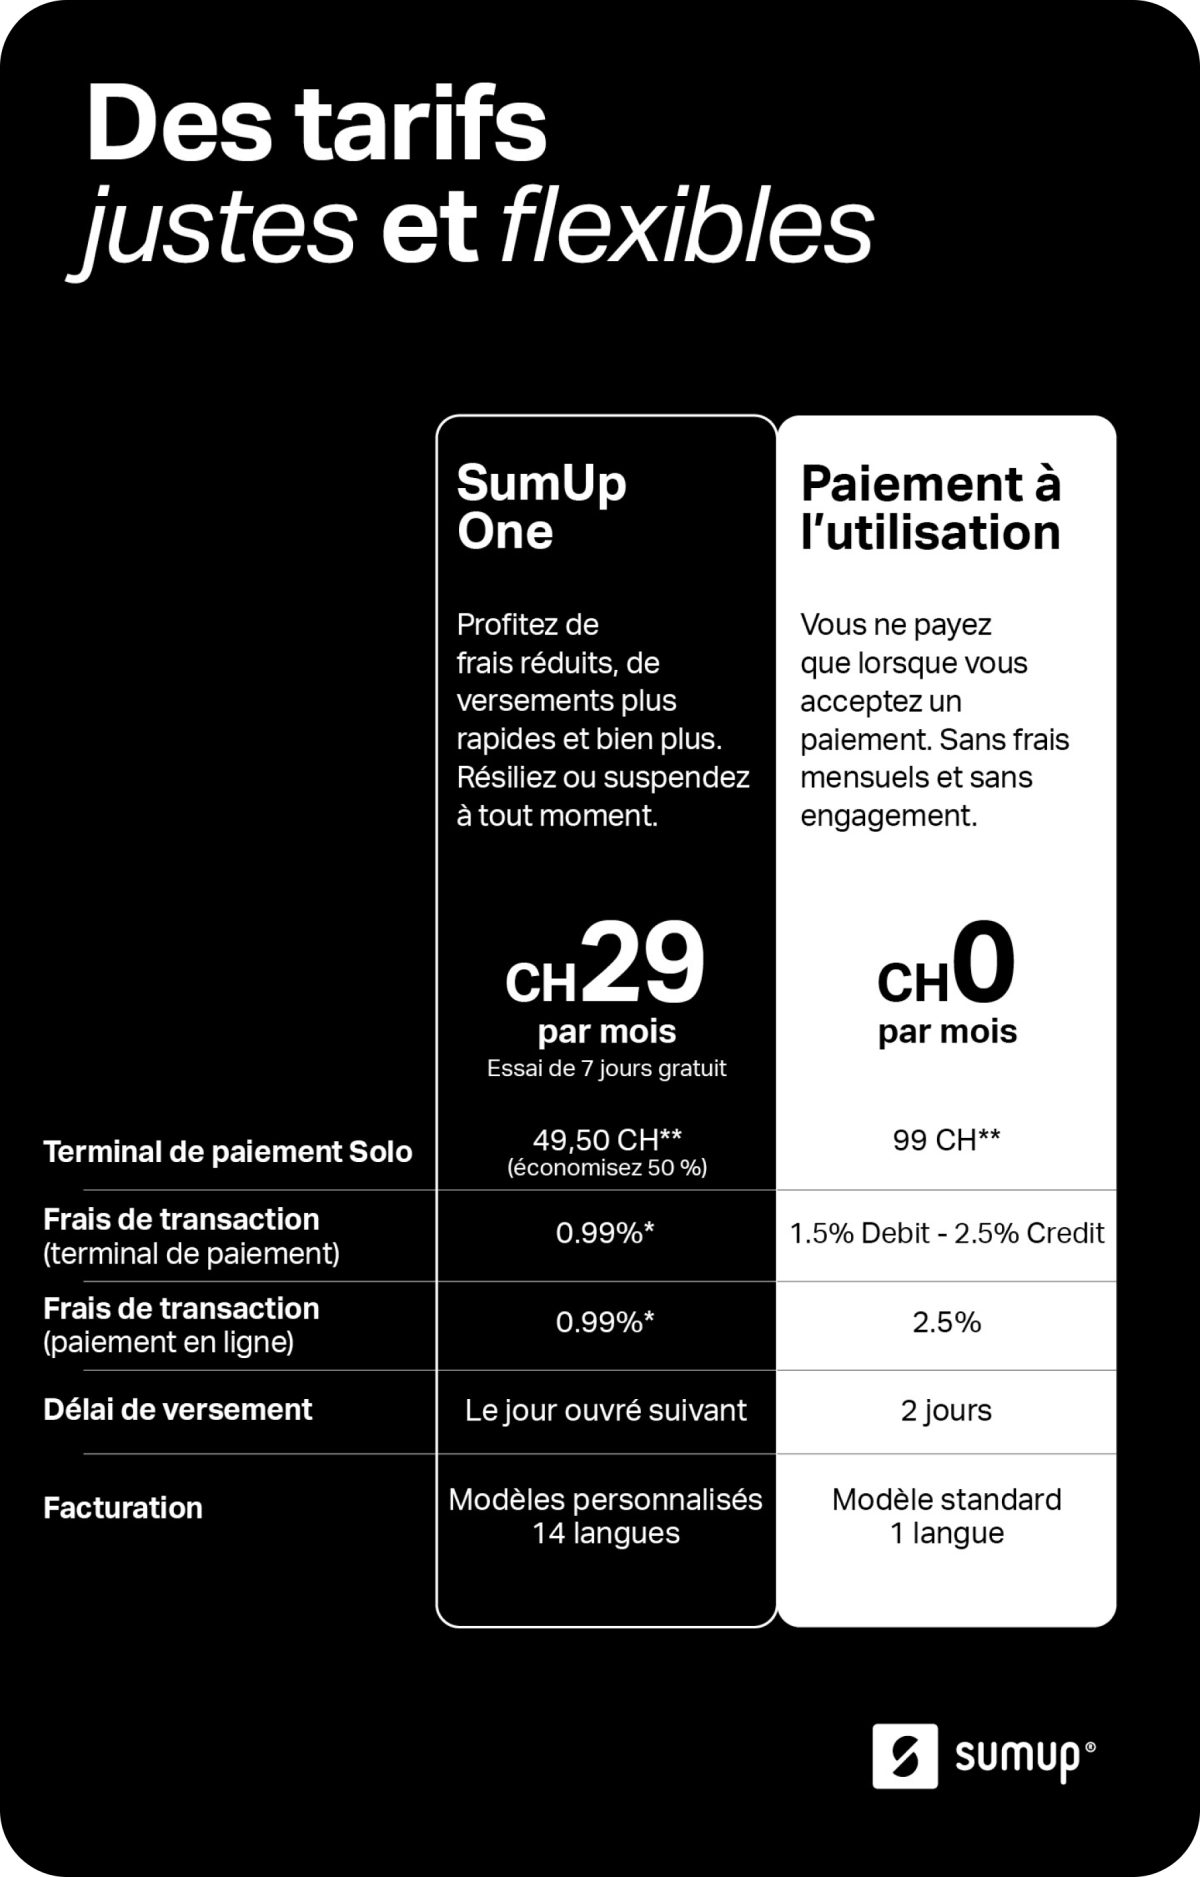 Image montrant les différences entre l’abonnement SumUp One et l’option de paiement à l’utilisation. Avec SumUp One, vous bénéficiez de : 50 % de réduction sur Solo, frais réduits, versements le lendemain, la facturation et d’une aide prioritaire.